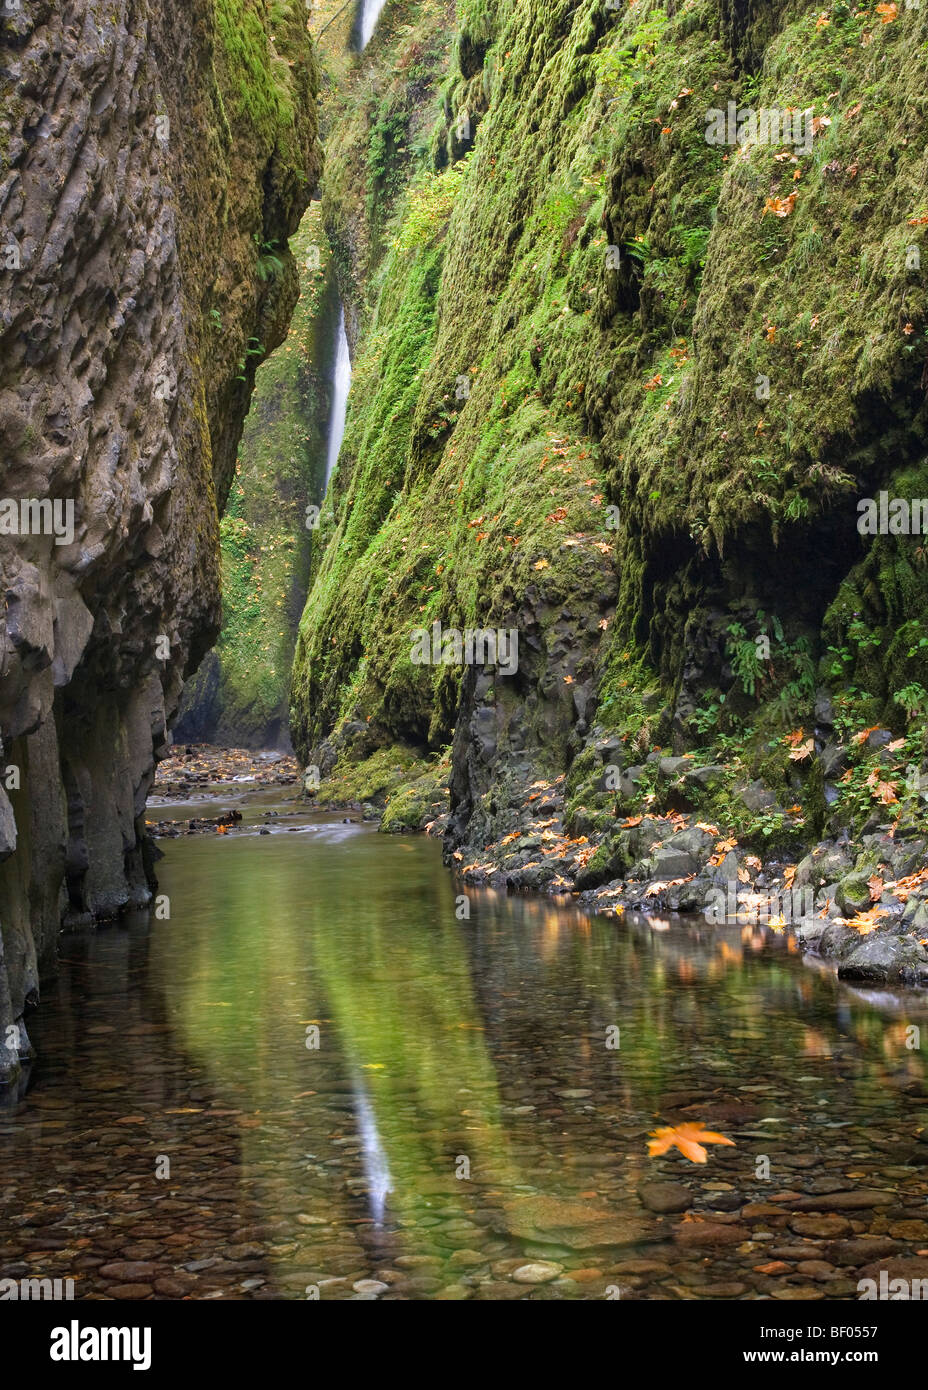 Cascata in una foresta, Oneonta Falls, Oneonta Gorge, Columbia River Gorge, Oregon, Stati Uniti d'America Foto Stock